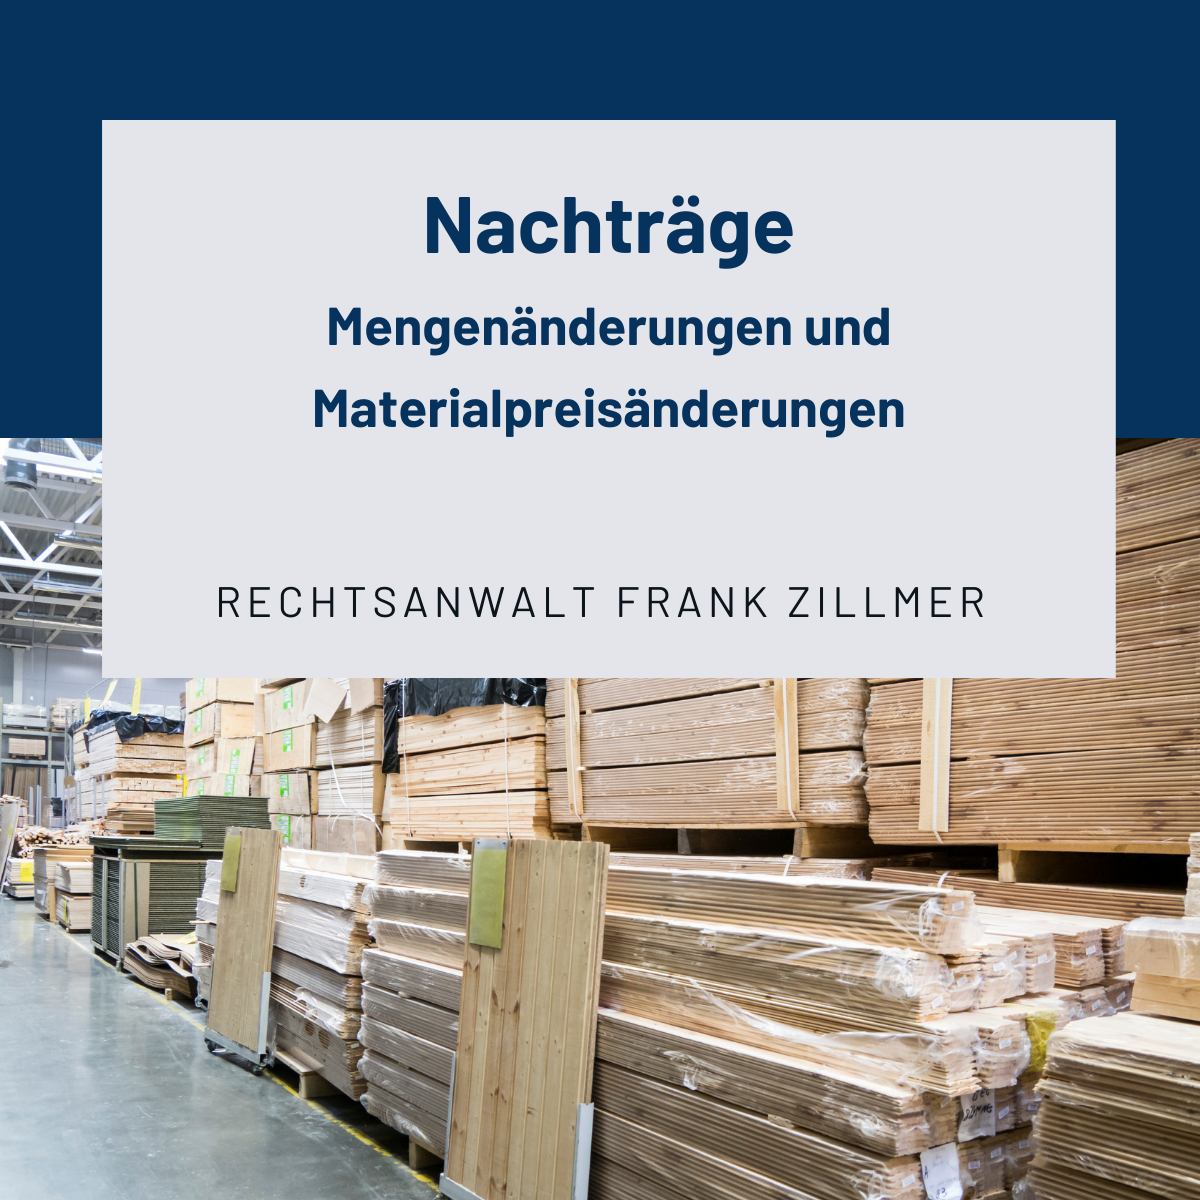 Nachträge: Mengenänderungen und Materialpreisänderungen - Rechtsanwalt Frank Zillmer Fachanwalt für Bau- und Architektenrecht
